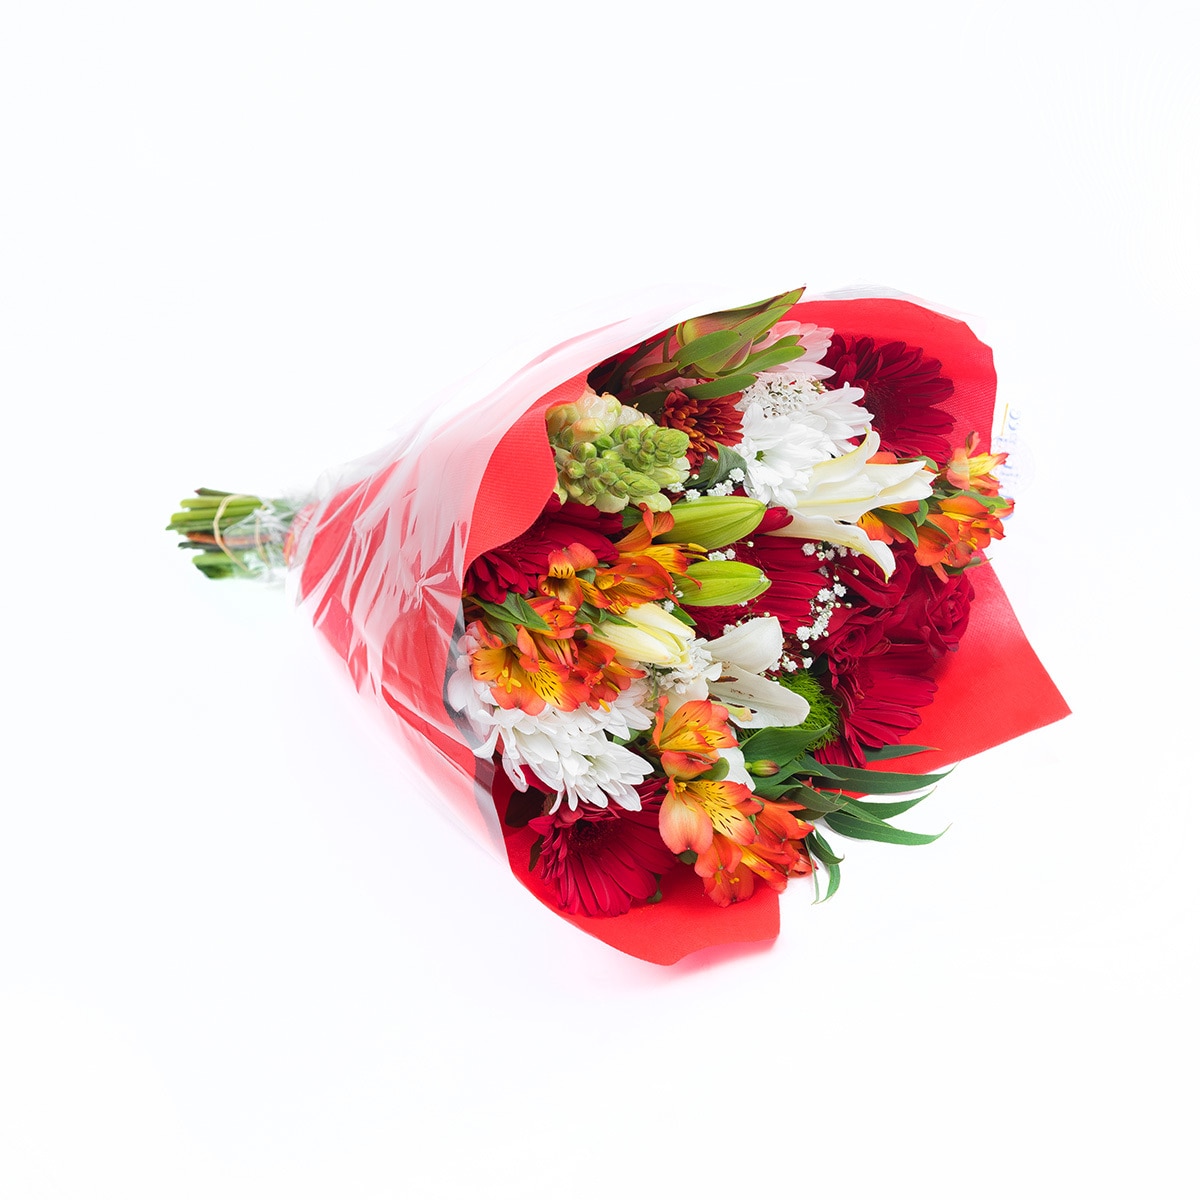 Bouquet mixto de 28 tallos en tonos rojos y blancos